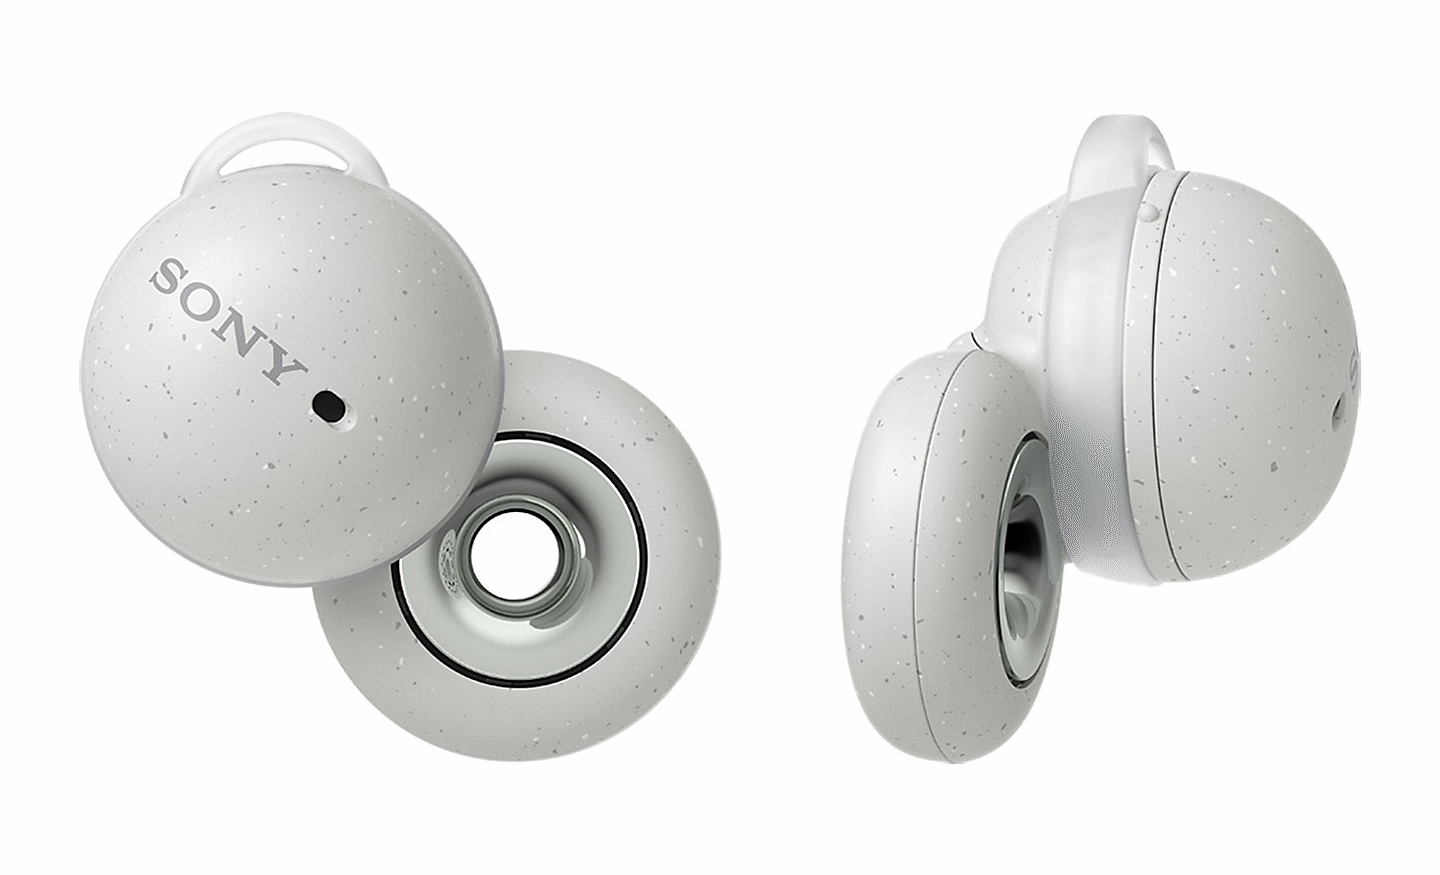 صورة لسماعات الرأس LinkBuds من سوني باللون الأبيض. يتم التقاط صورة لسماعة أذن صغيرة من الخلف وأخرى من الجانب